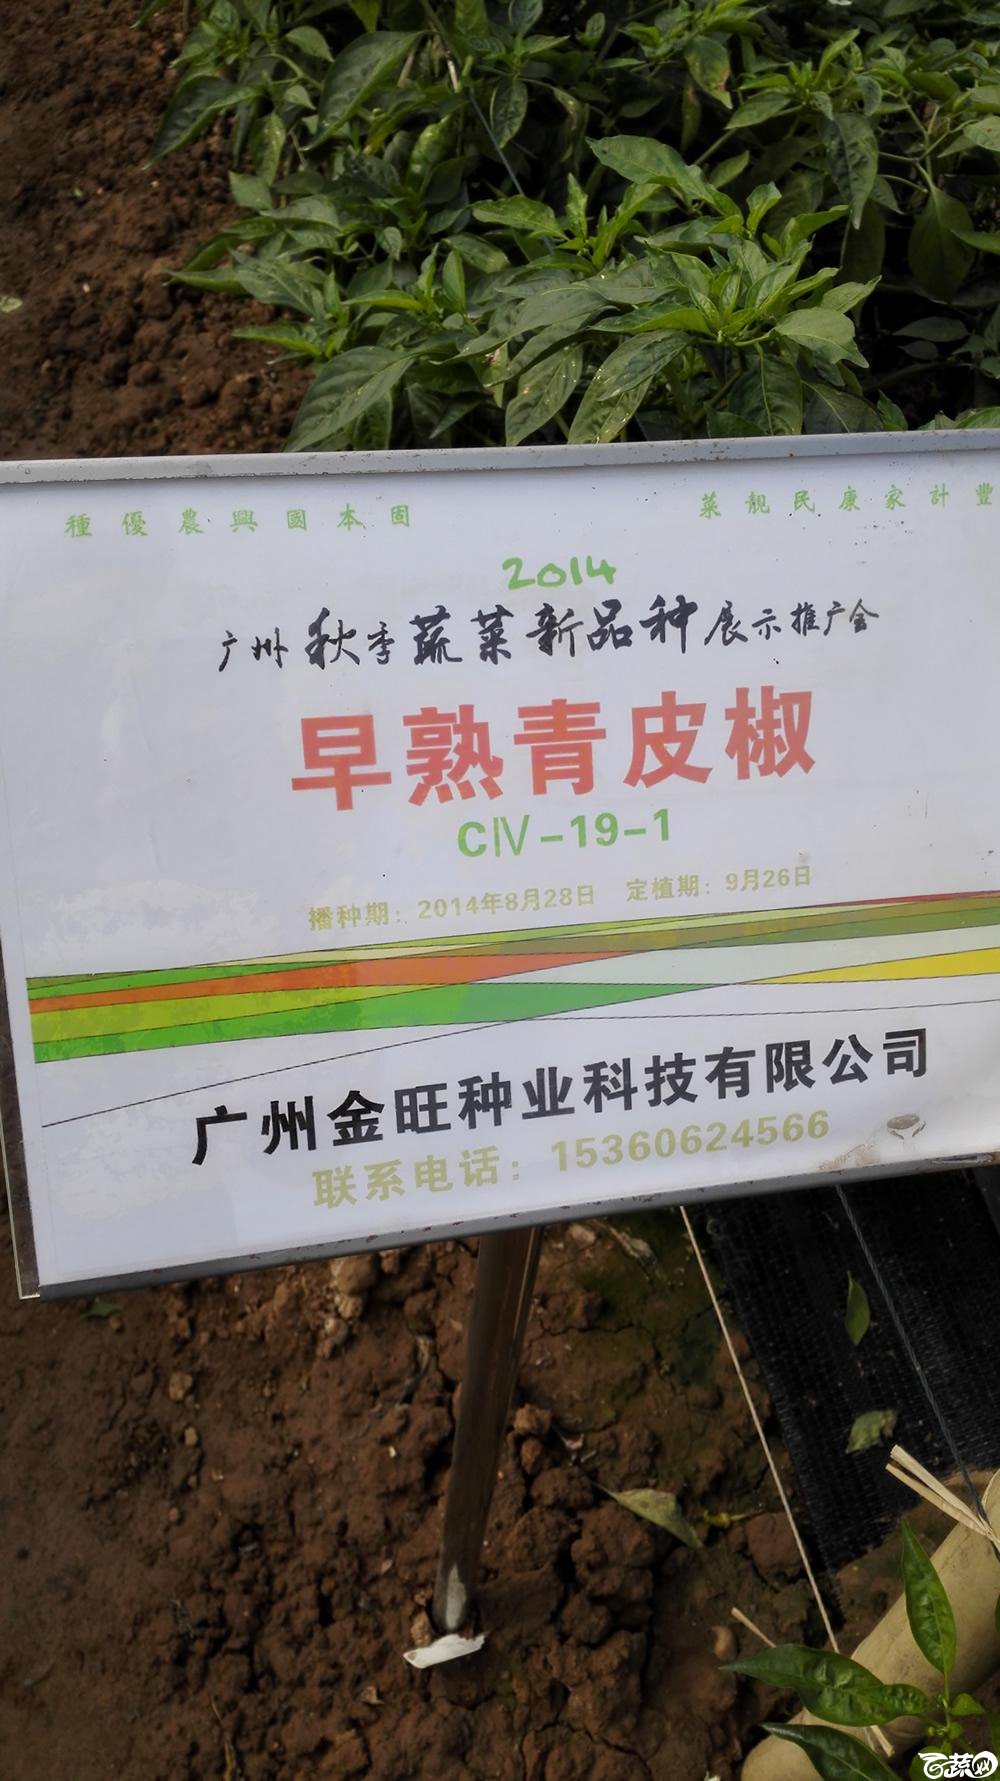 2014年12月10号广州市农科院南沙秋季蔬菜新品种展示会_辣椒_041.jpg